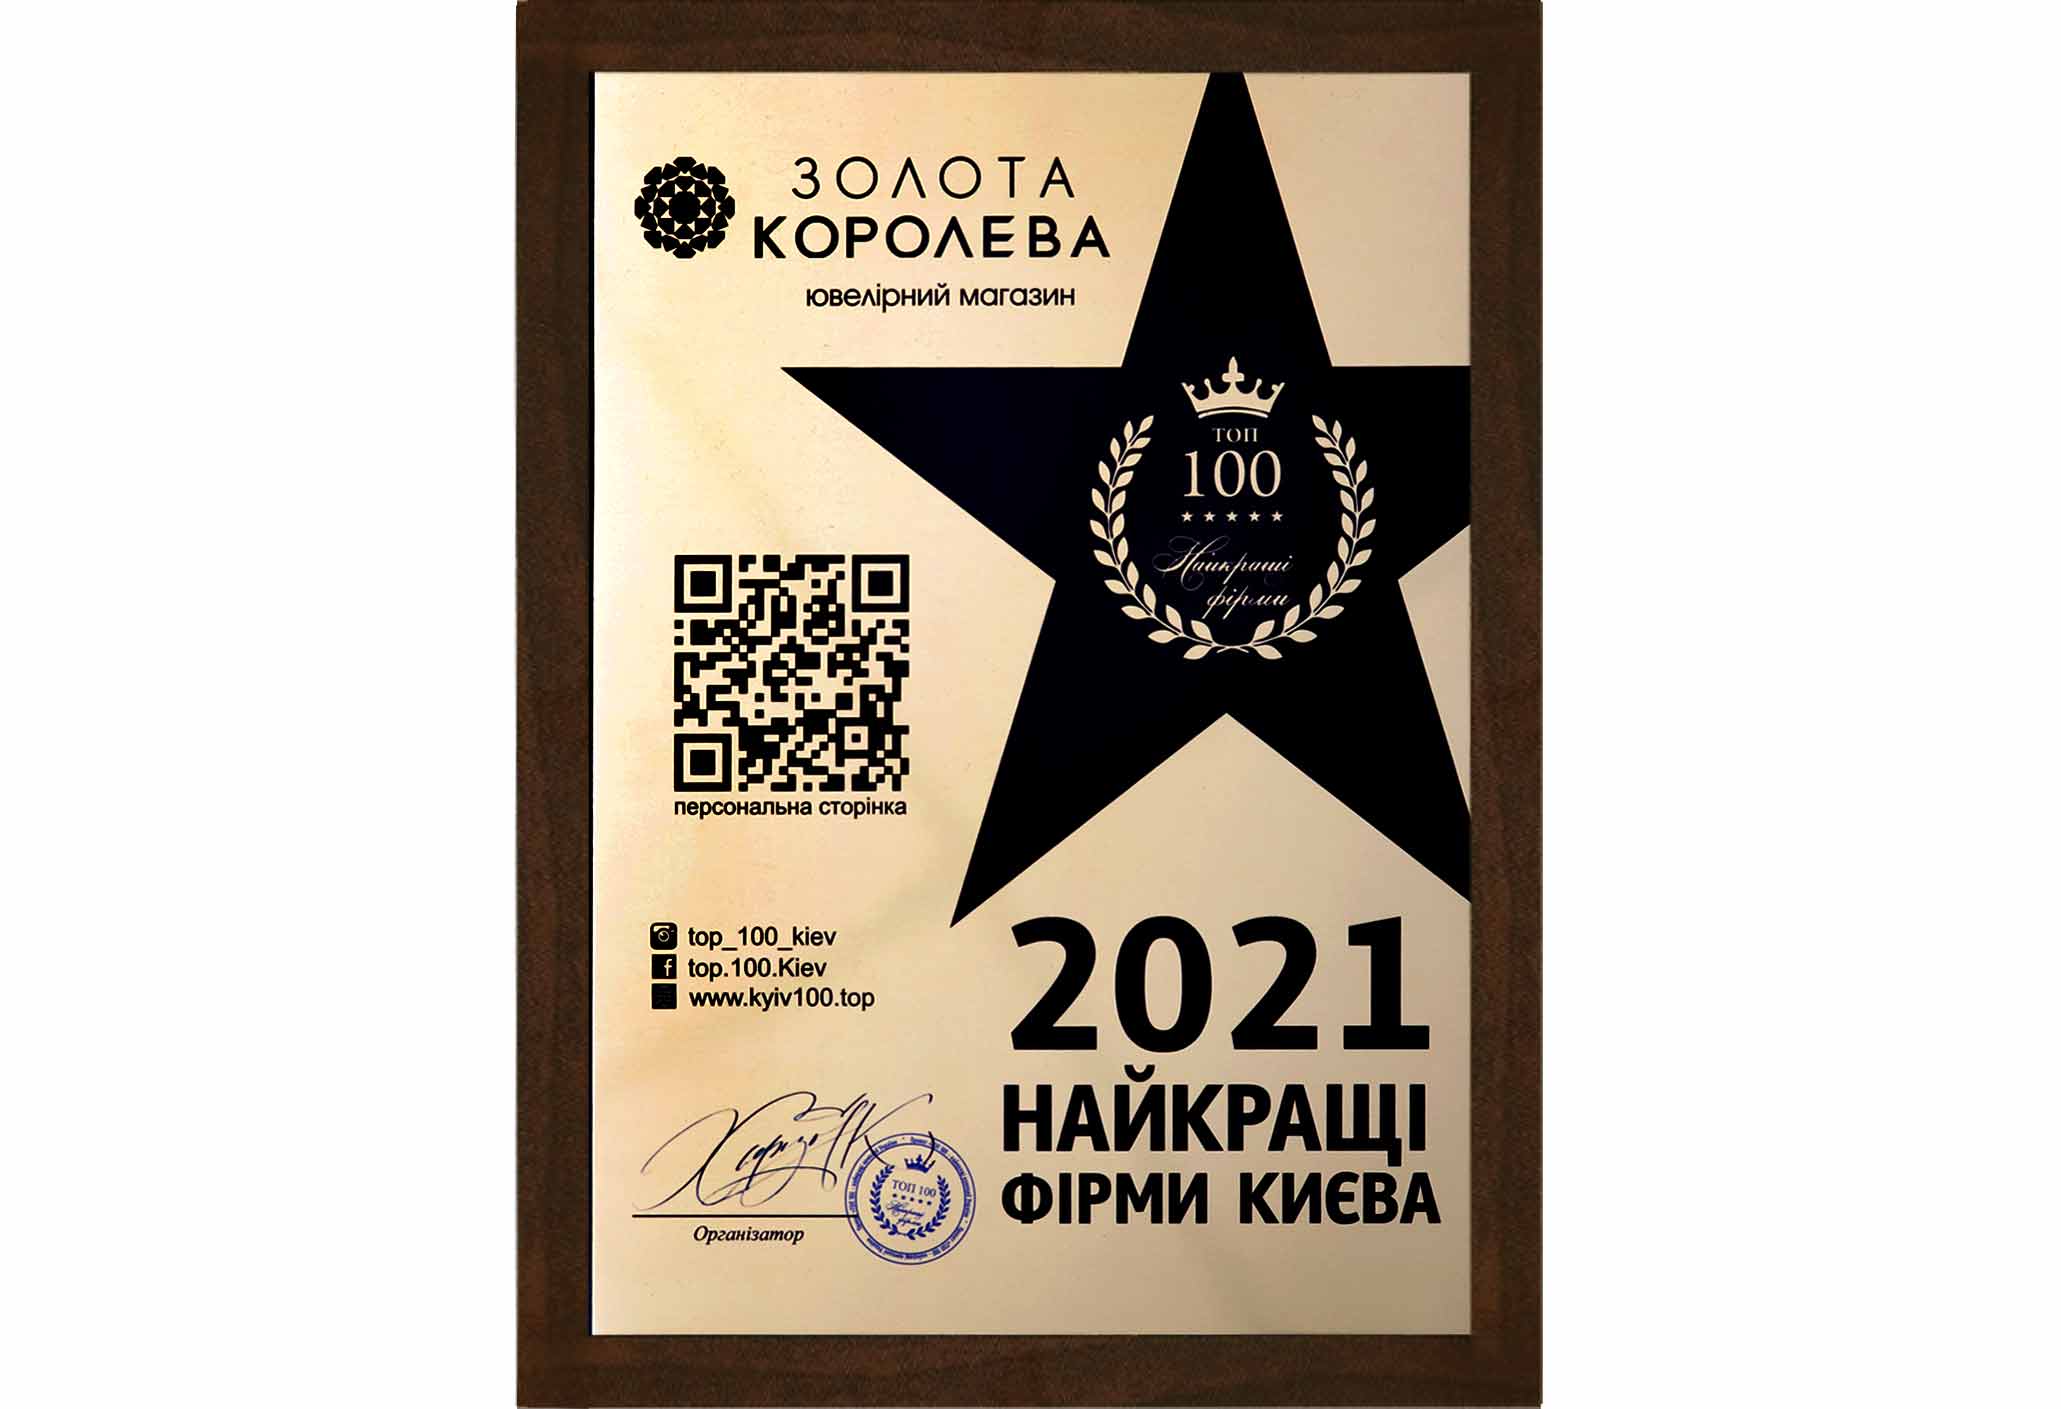 Найкраща фірма Києва 2021- ювелірний магазин Золота королева